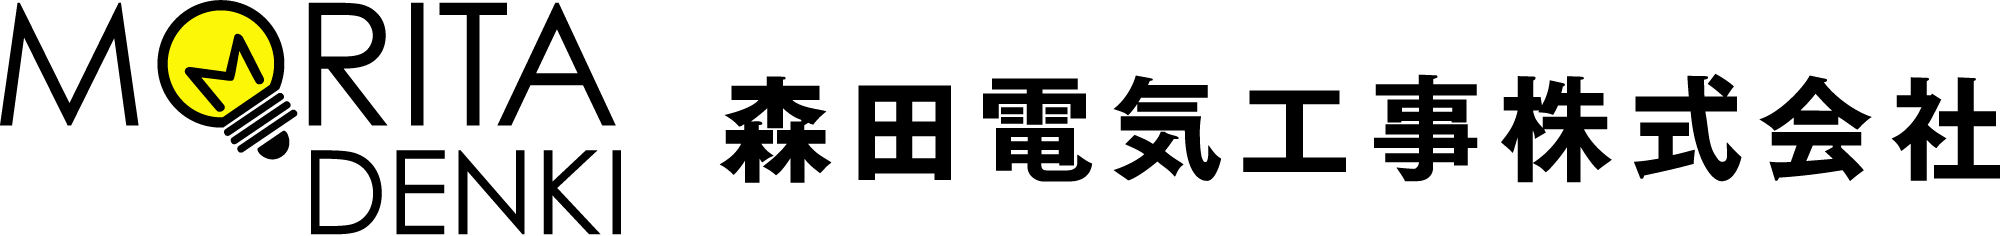 森田電気工事株式会社のホームページ